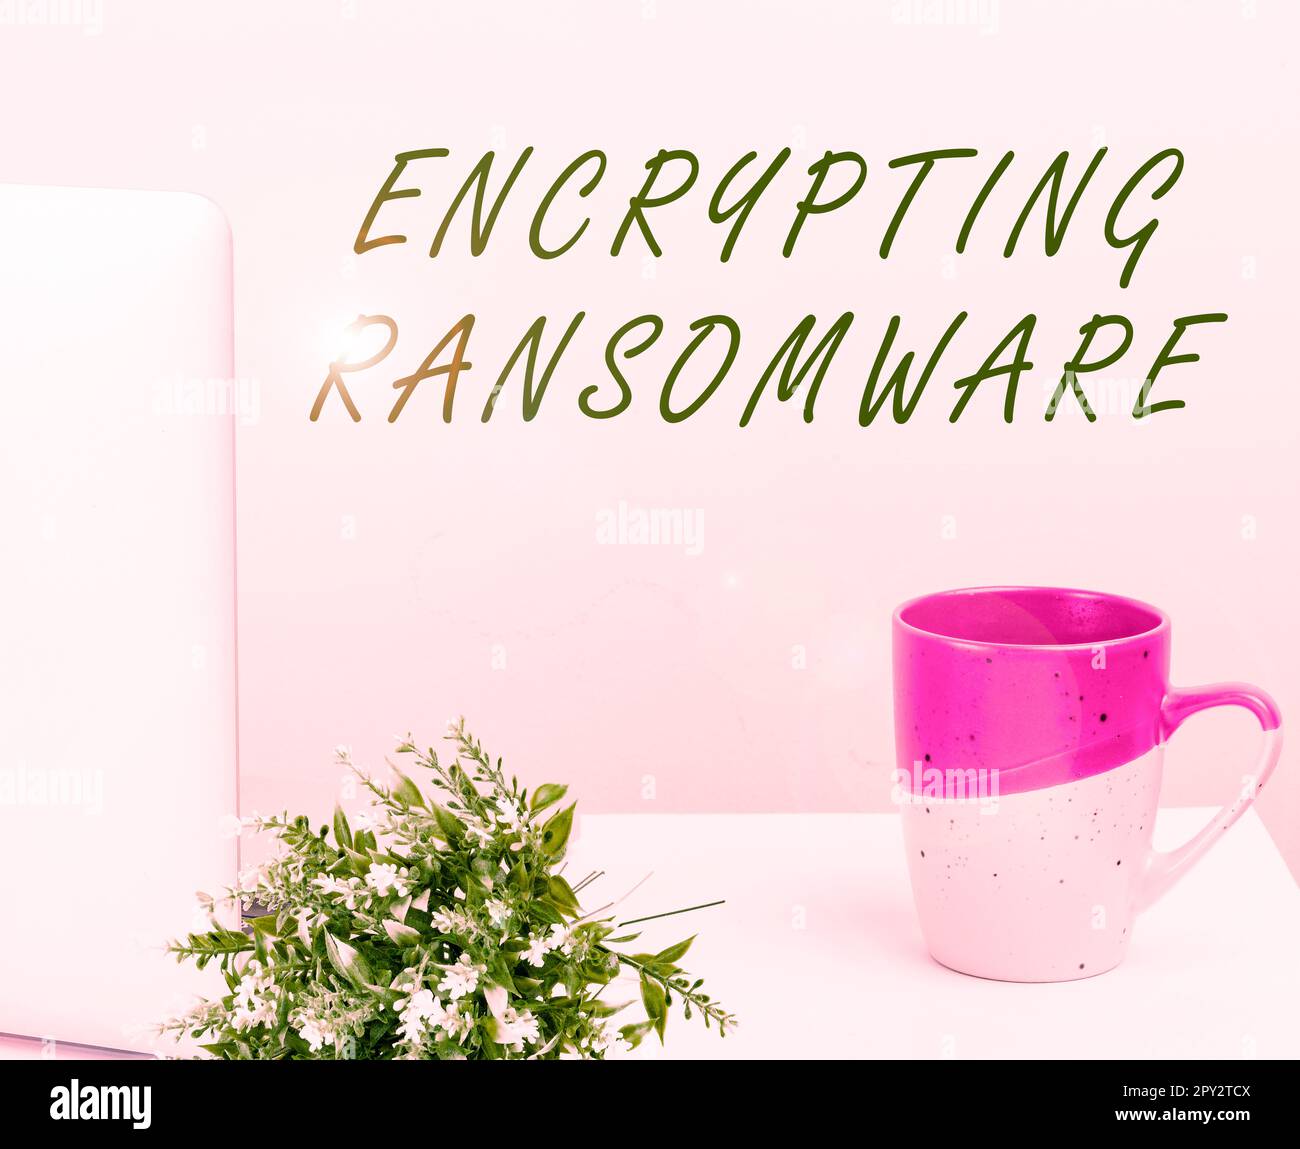 Signature manuscrite crypter ransomware, concept signifiant protéger les données confidentielles contre les attaquants avec accès Banque D'Images